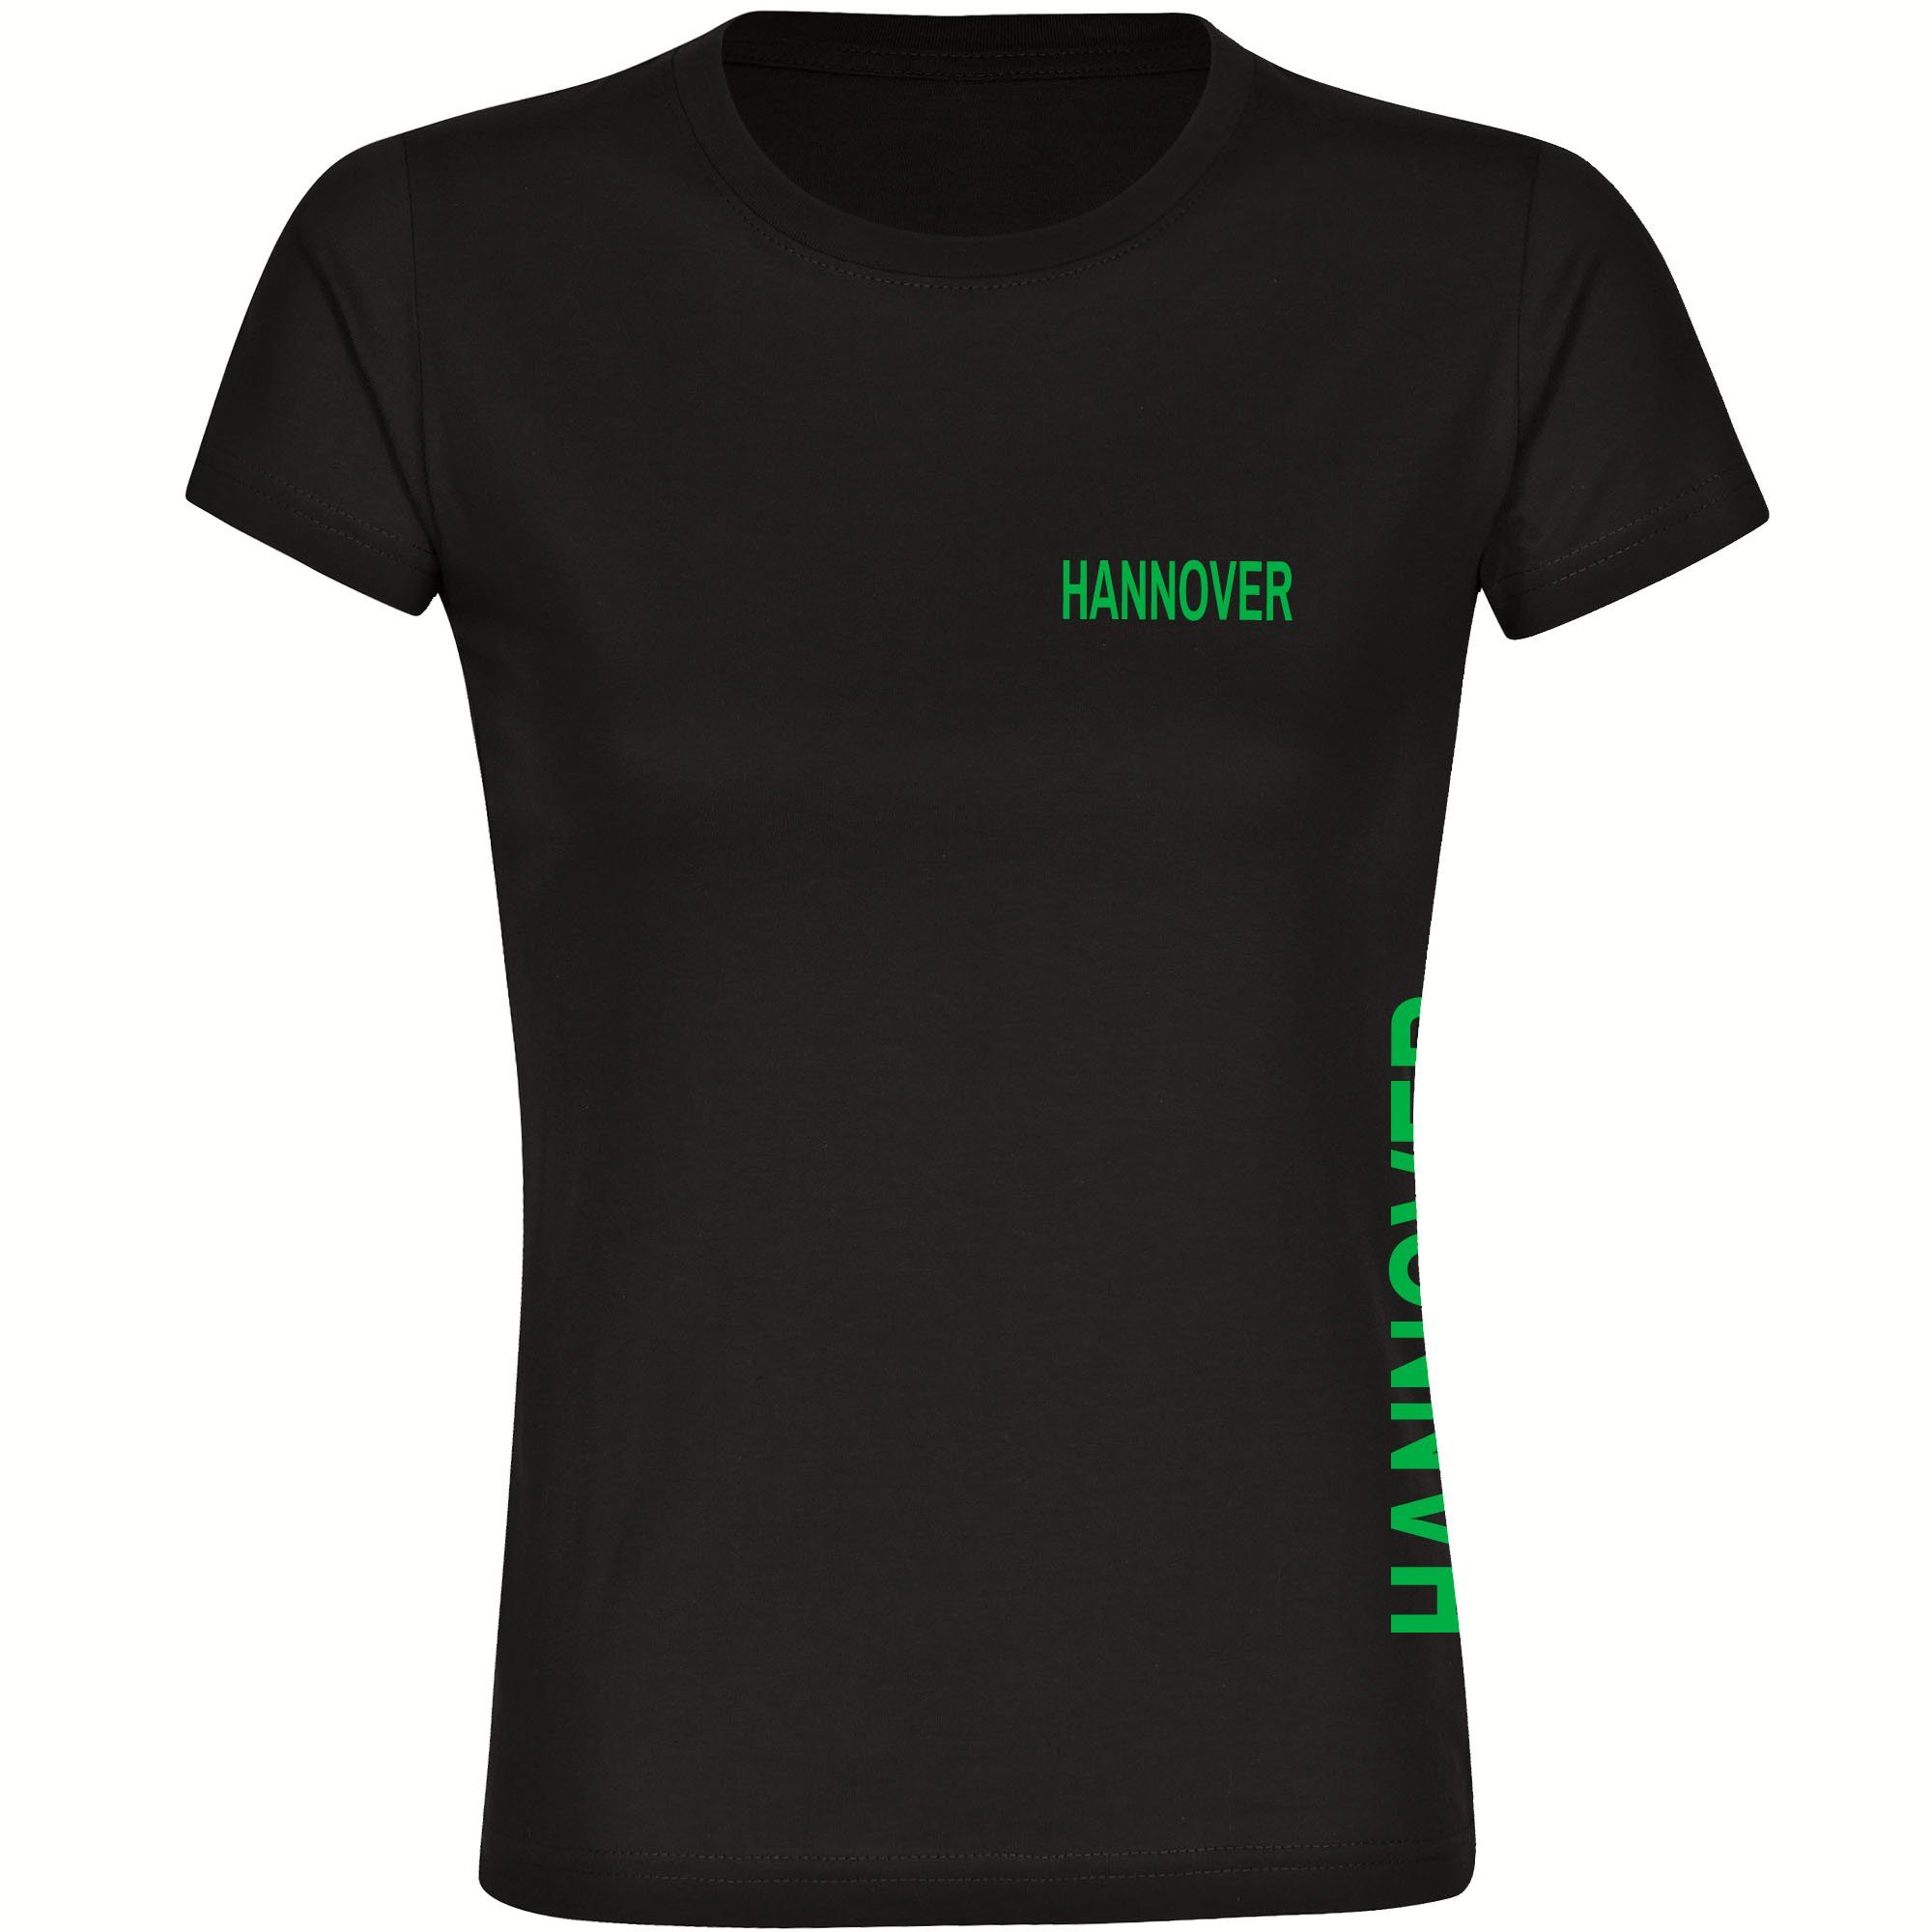 multifanshop T-Shirt Damen Hannover - Brust & Seite - Frauen